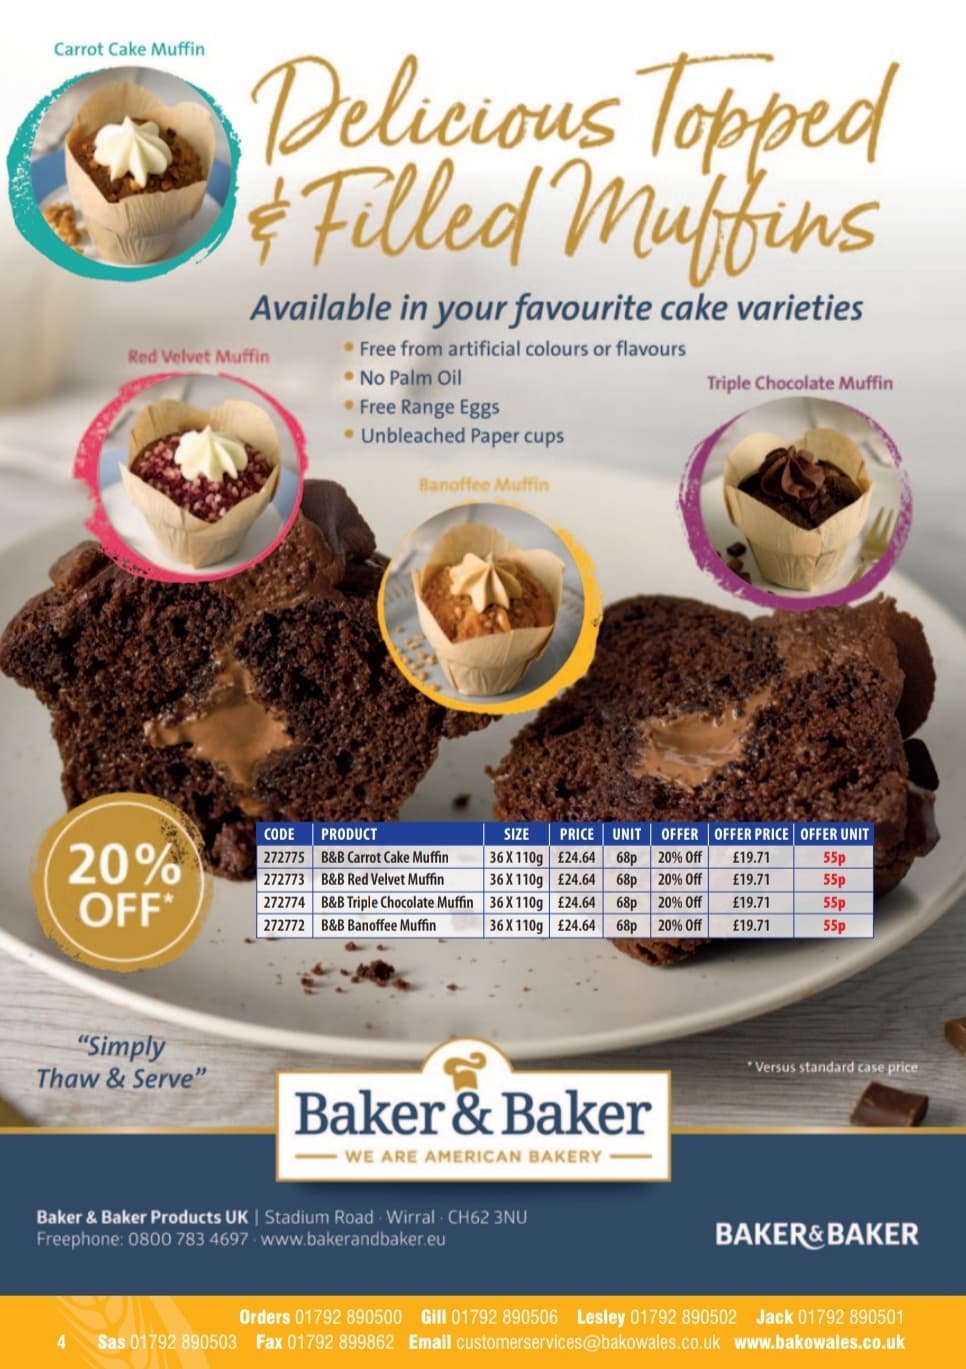 Image for 20% Off Baker & Baker's New Muffin Range